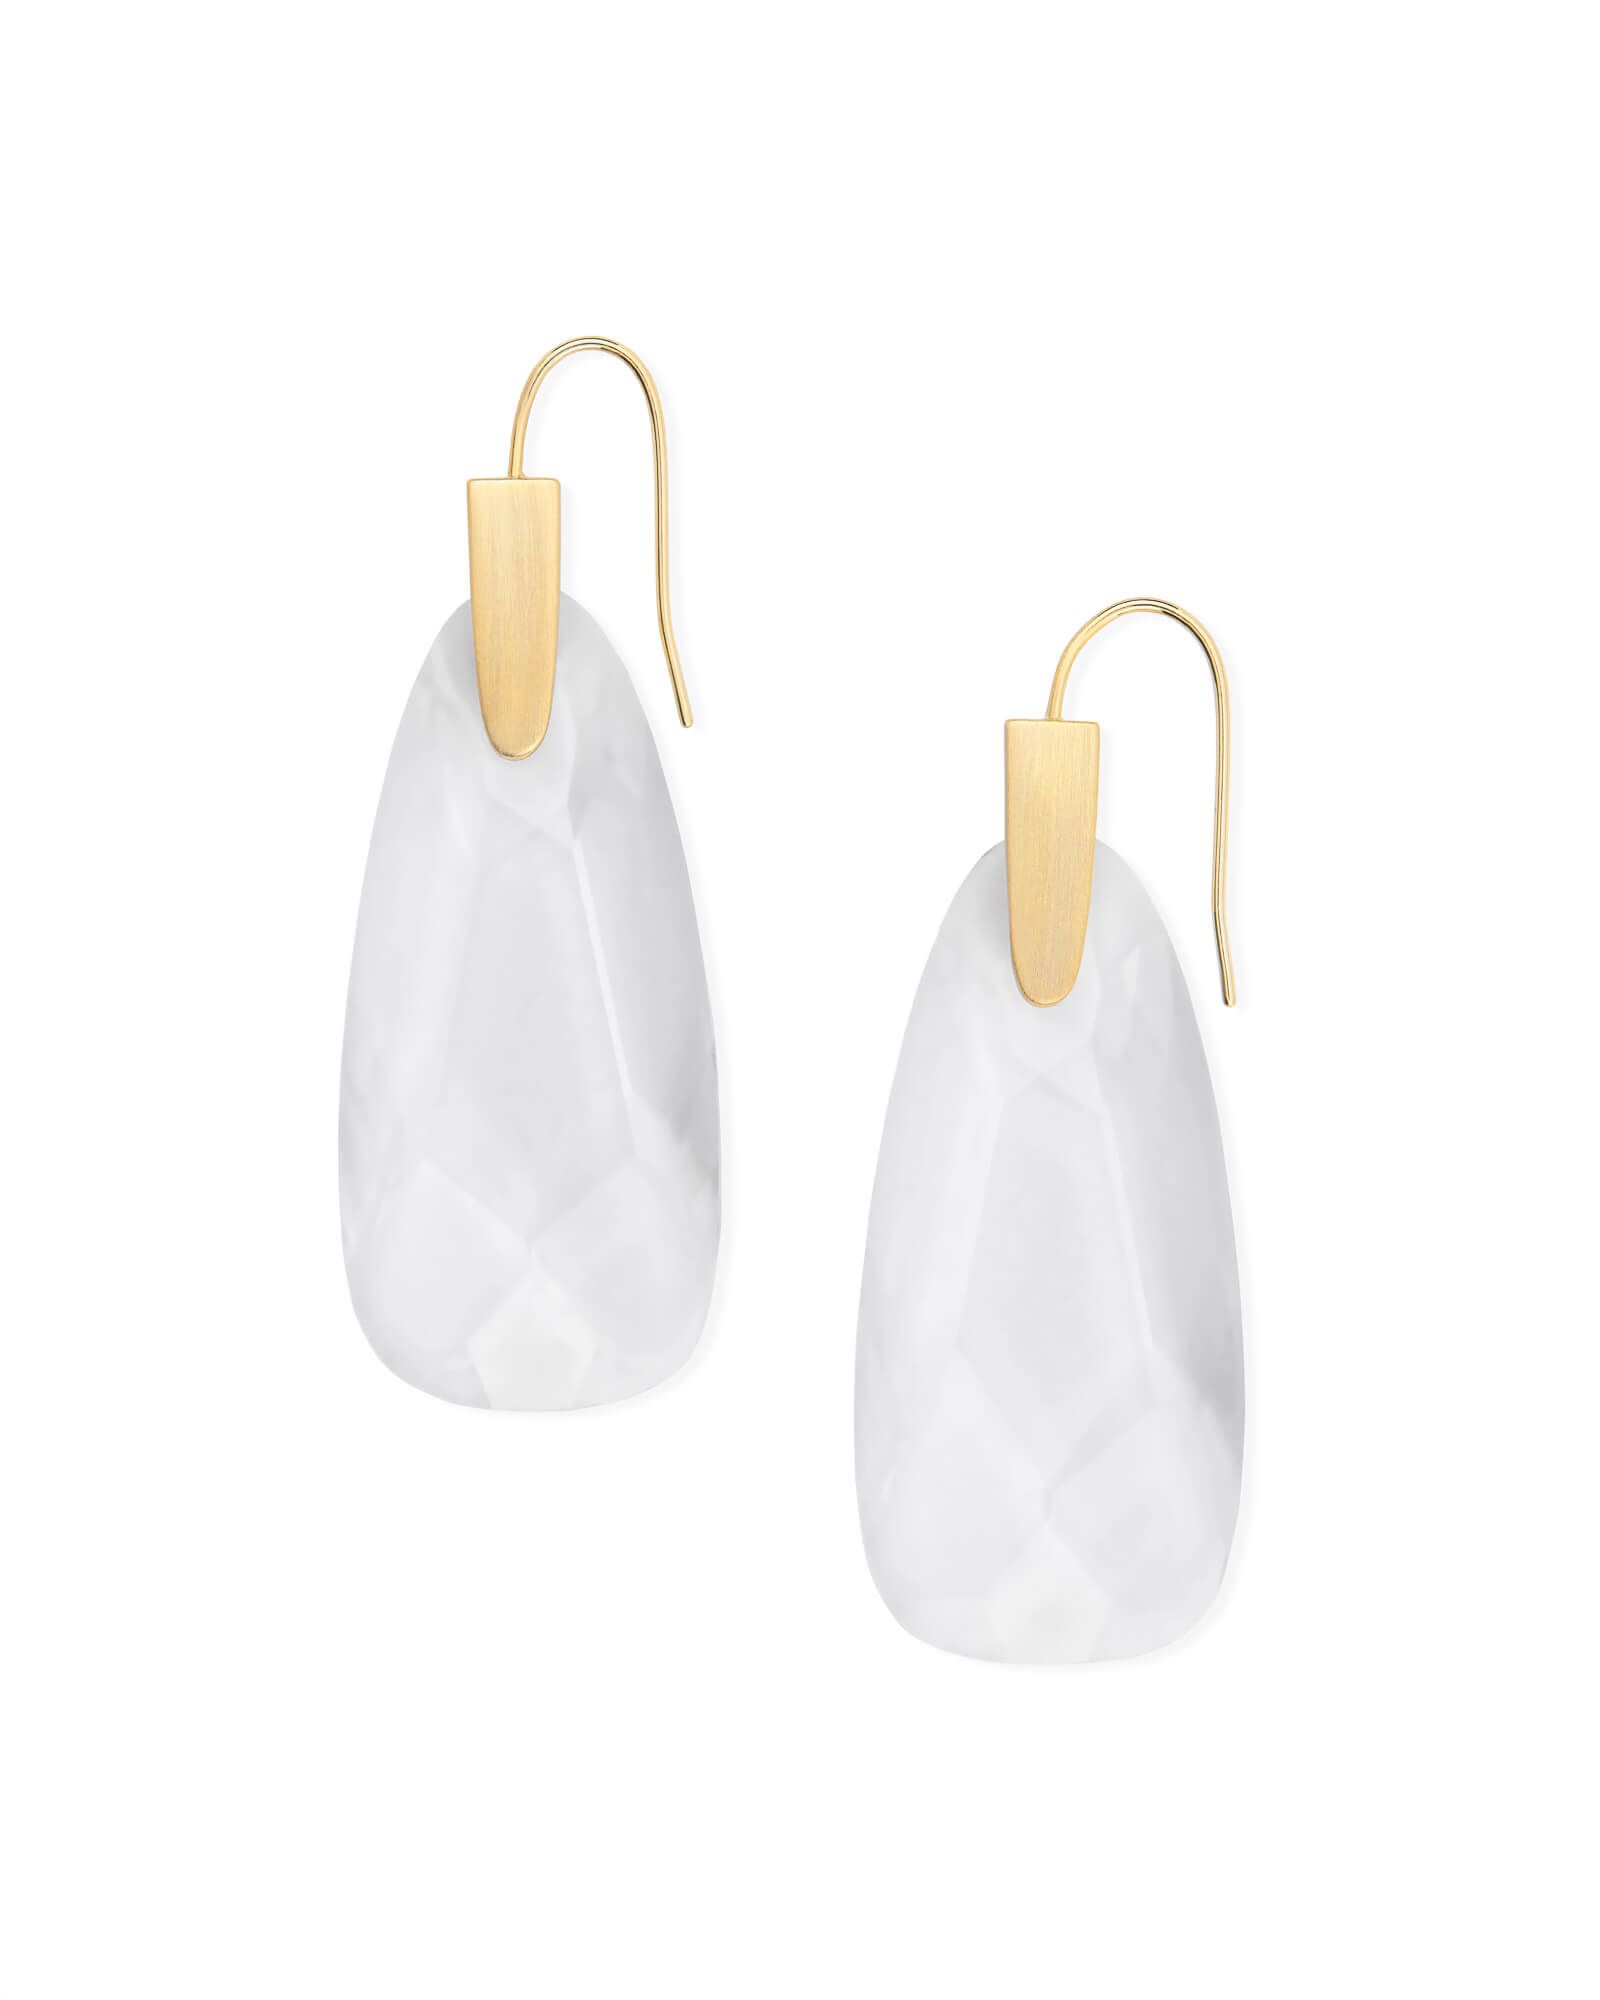 Maize Gold Drop Earrings in Clear Glass | Kendra Scott